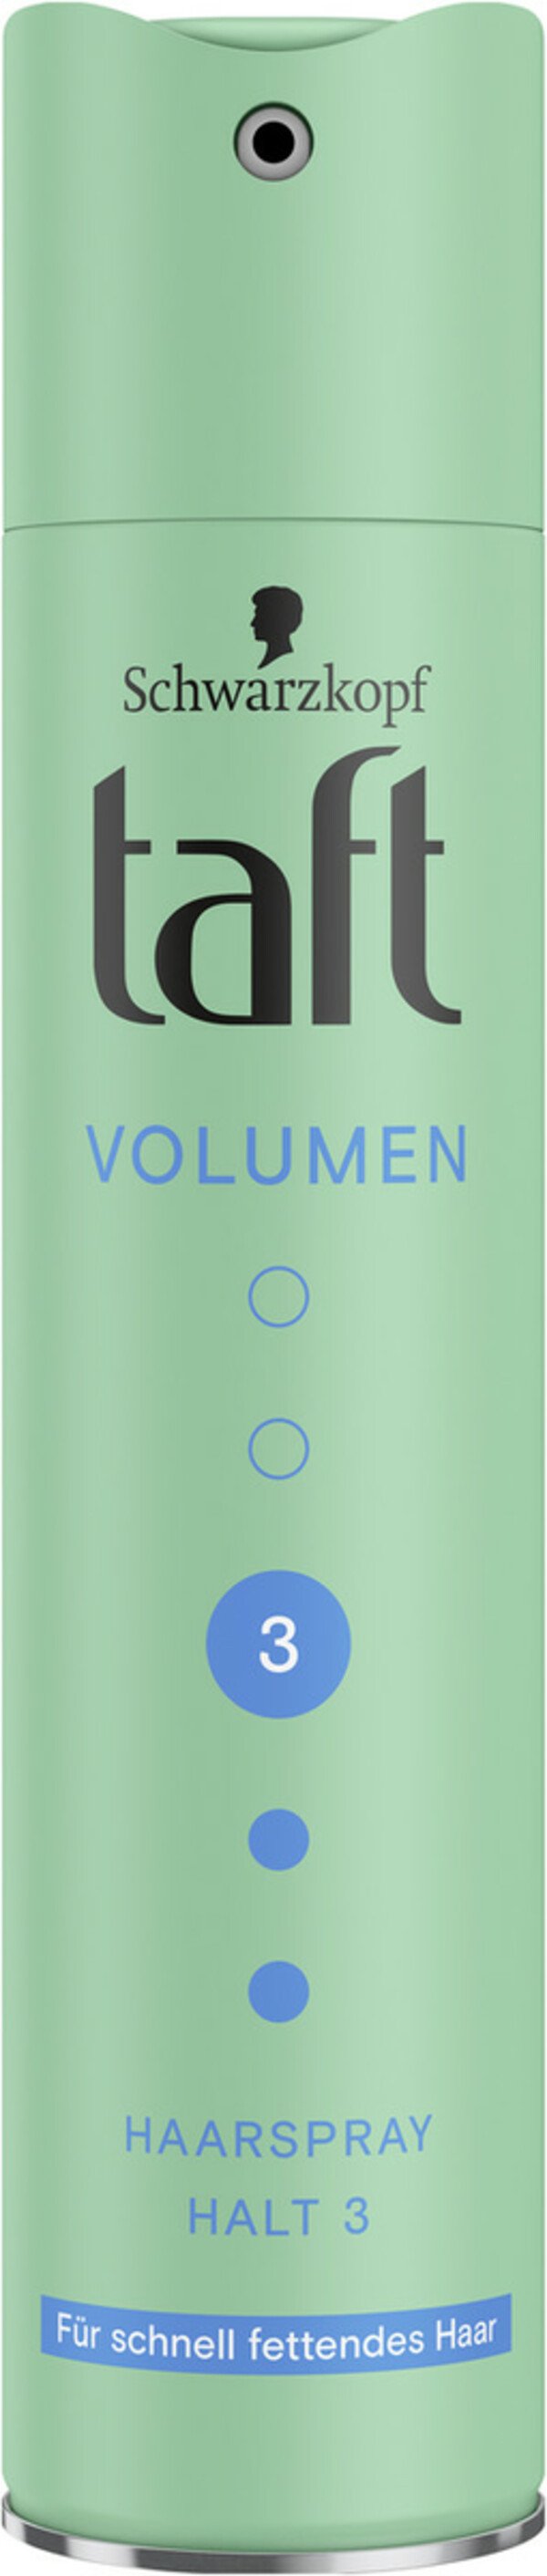 Bild 1 von Schwarzkopf Taft Volumen Haarspray Halt 3 250ML